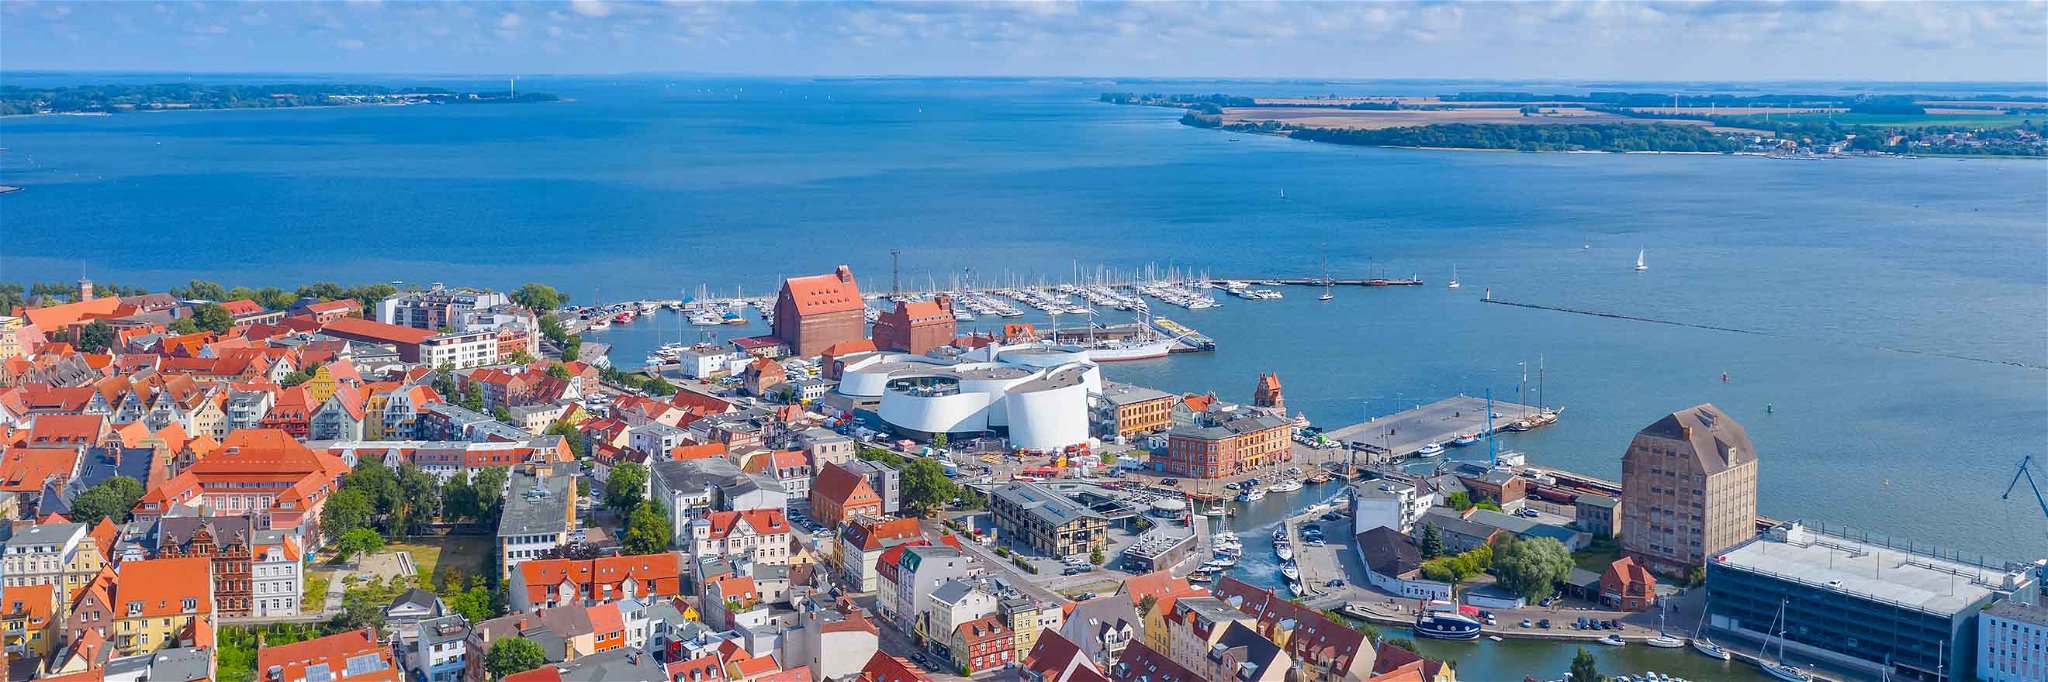 Durch die Meerenge zwischen Stralsund und Rügen ist das Wasser der Ostsee hier besonders ruhig.